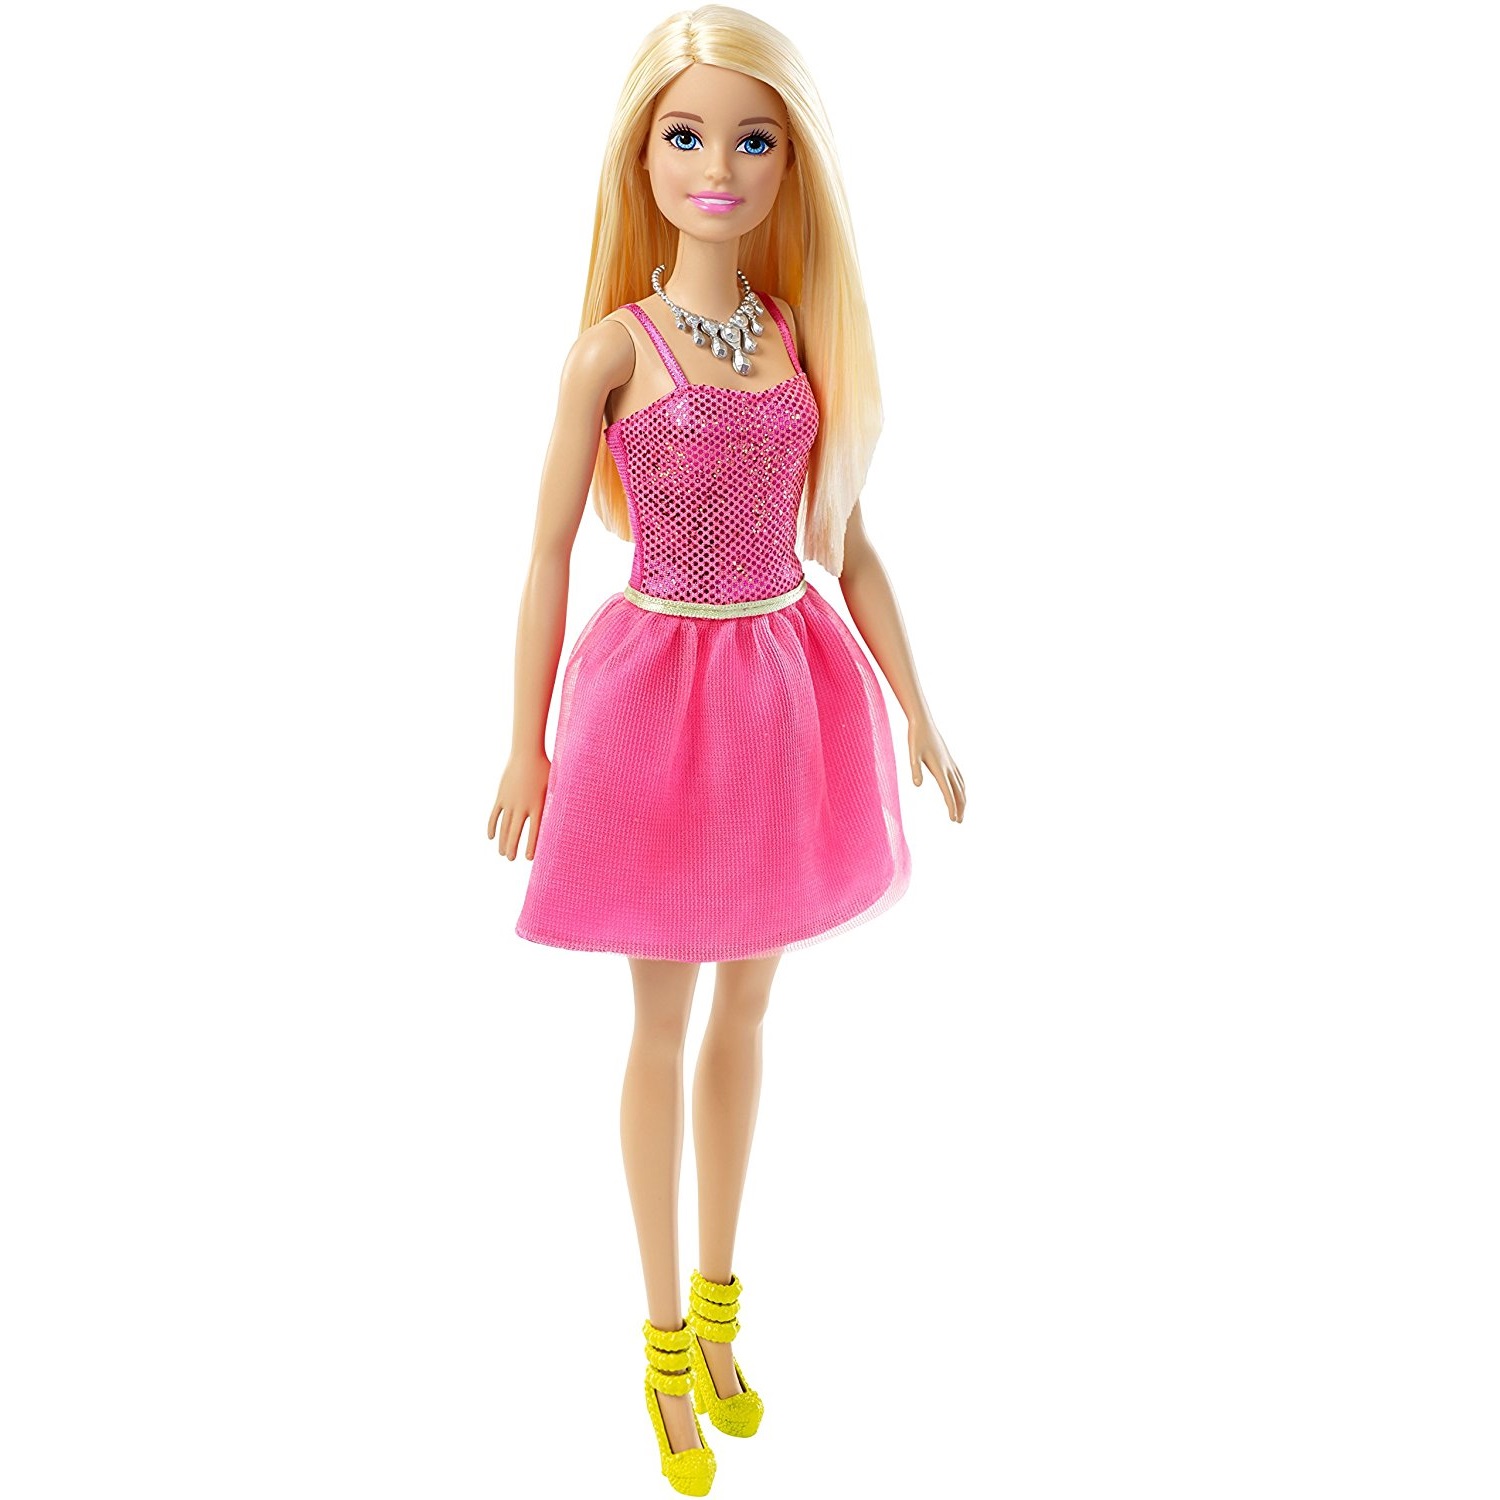 Игрушка барби купить. Кукла Barbie сияние моды, dgx82. Кукла Маттел Barbie. Кукла «Mattel Barbie t7439». Кукла Барби v rozovom Plate.